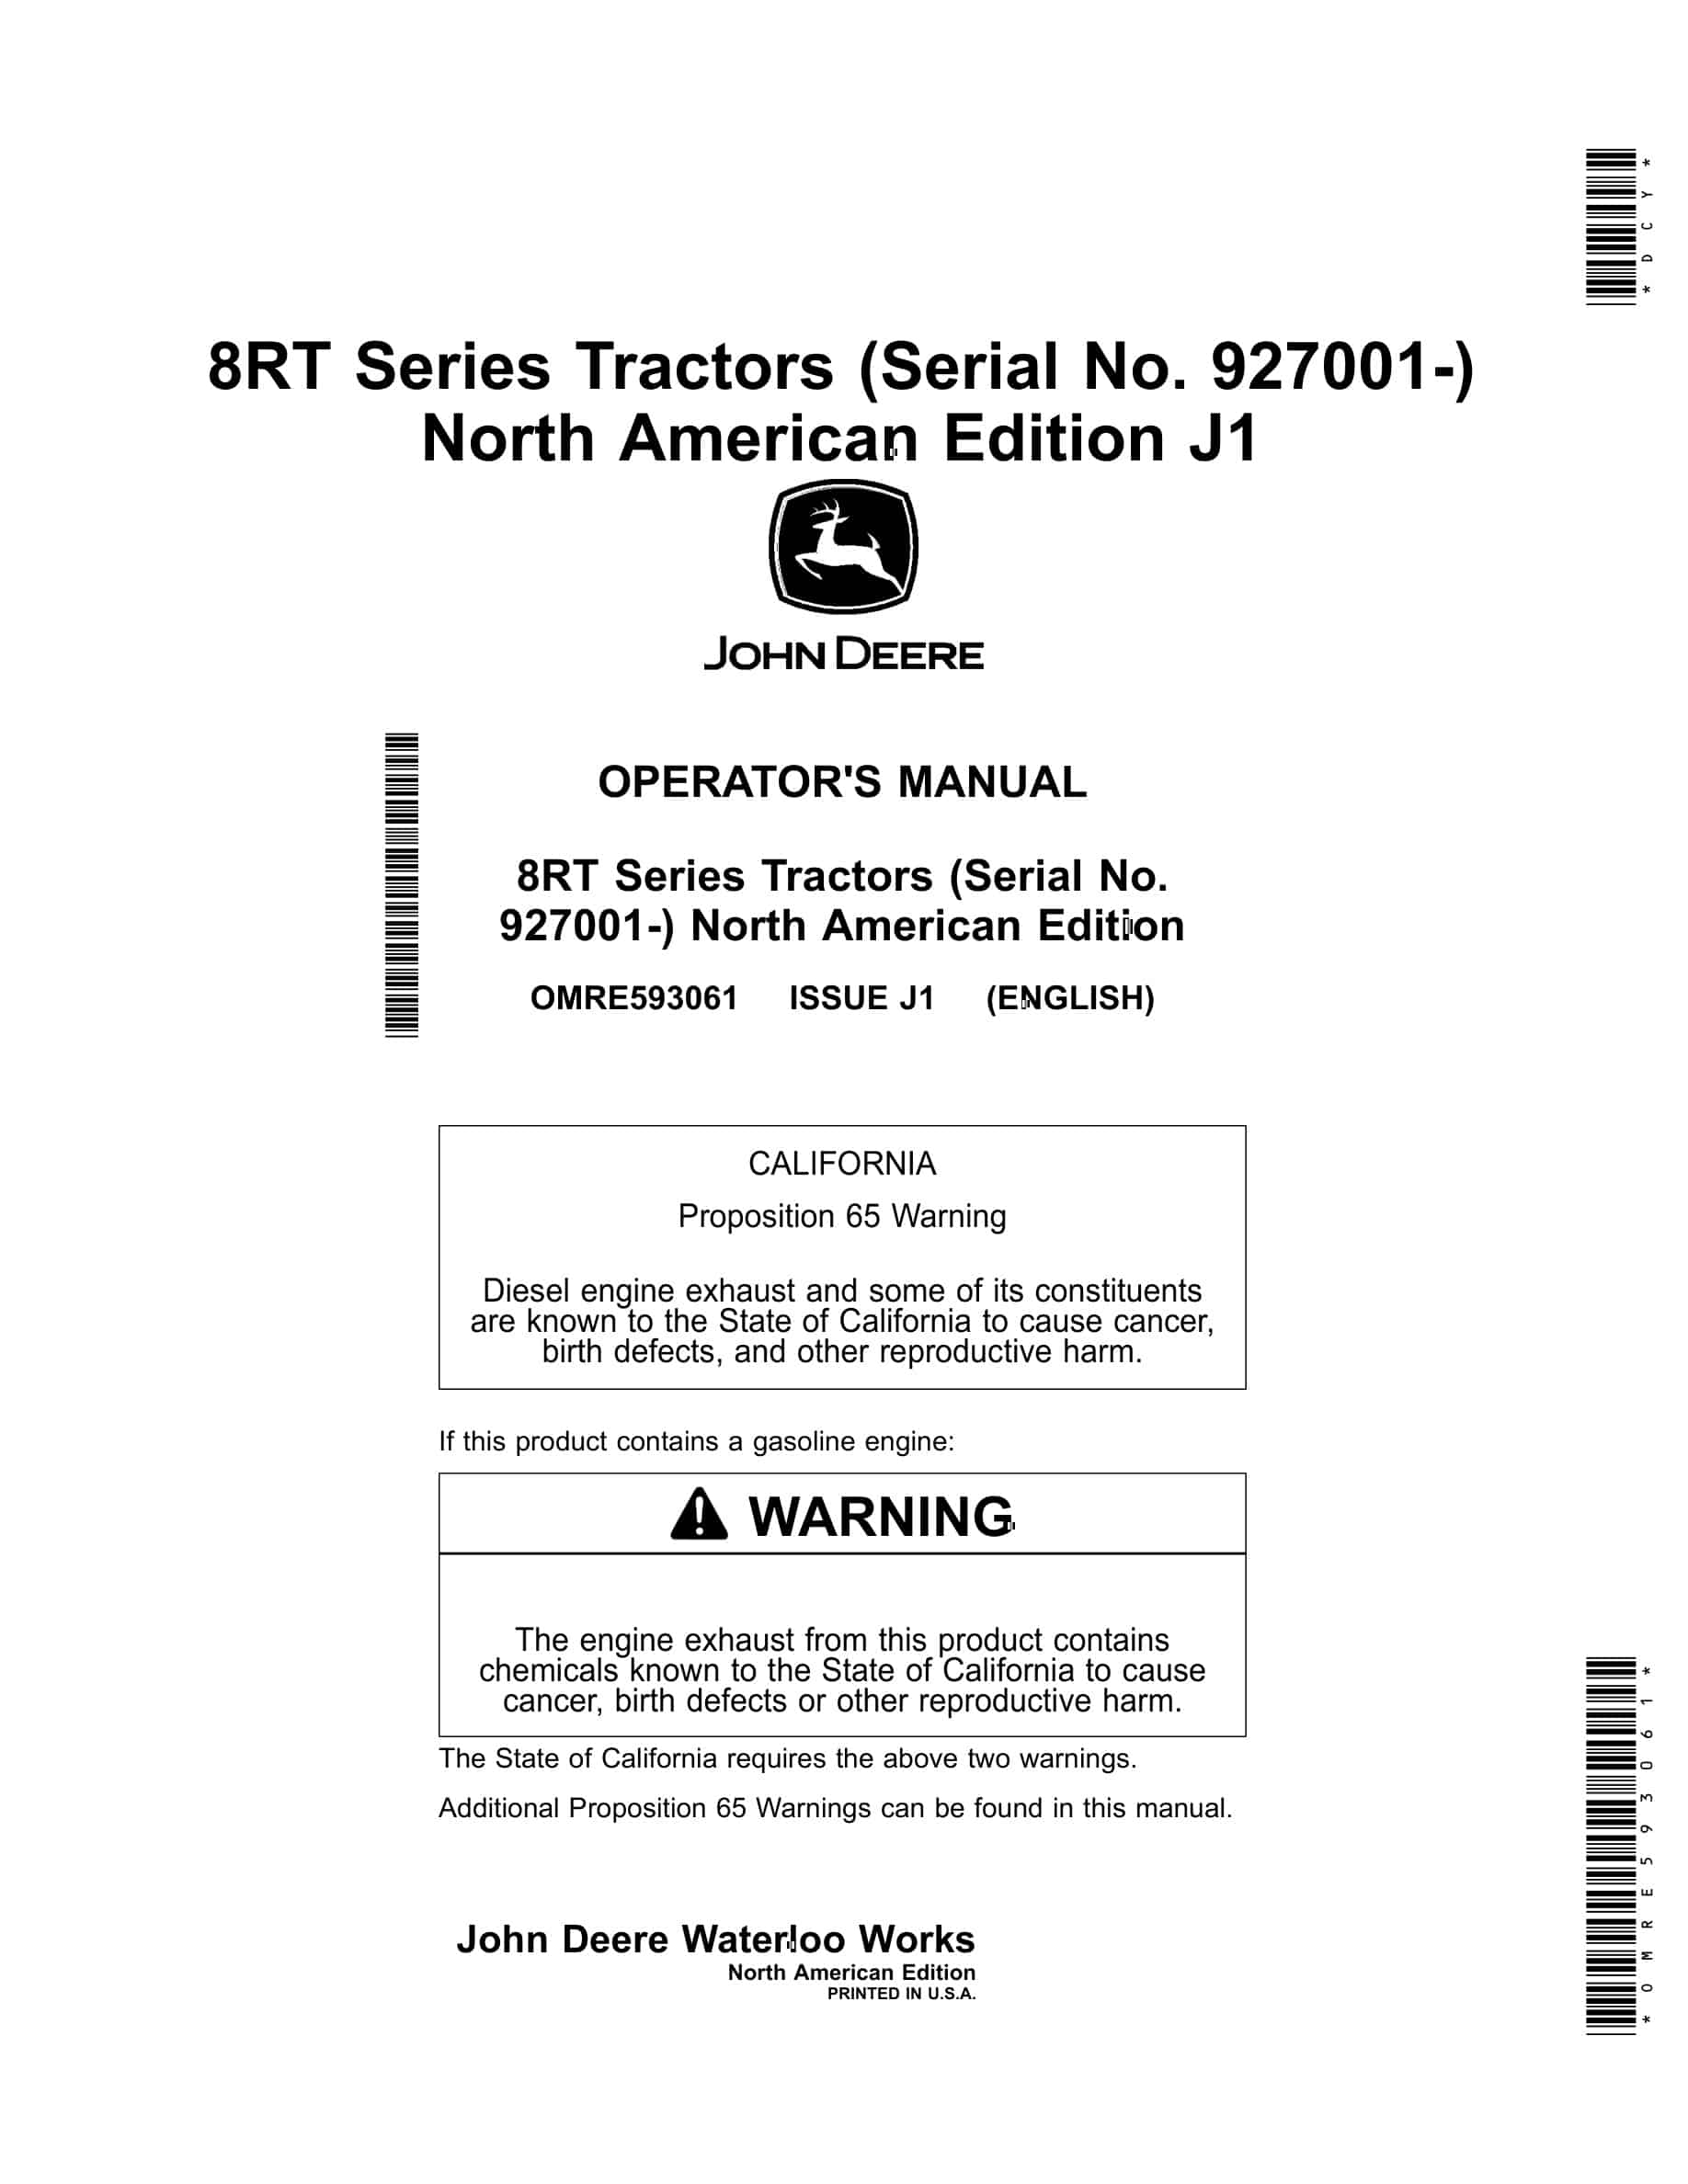 John Deere 8RT Tractor Operator Manual OMRE593061-1